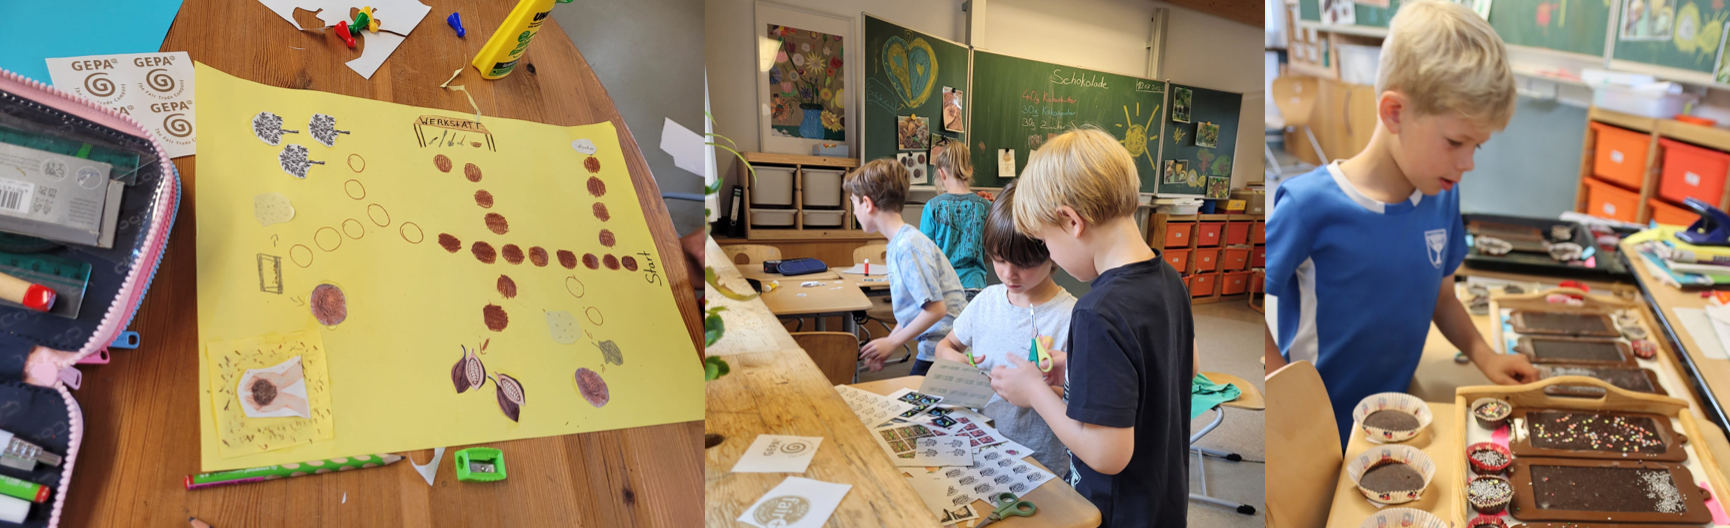 zusammengesetztes Bild zeigt Spielentwurf auf Papier, Kinder vor Tafel mit Schokoladenrezept, Kind mit Schokolade in verschiedenen Formen